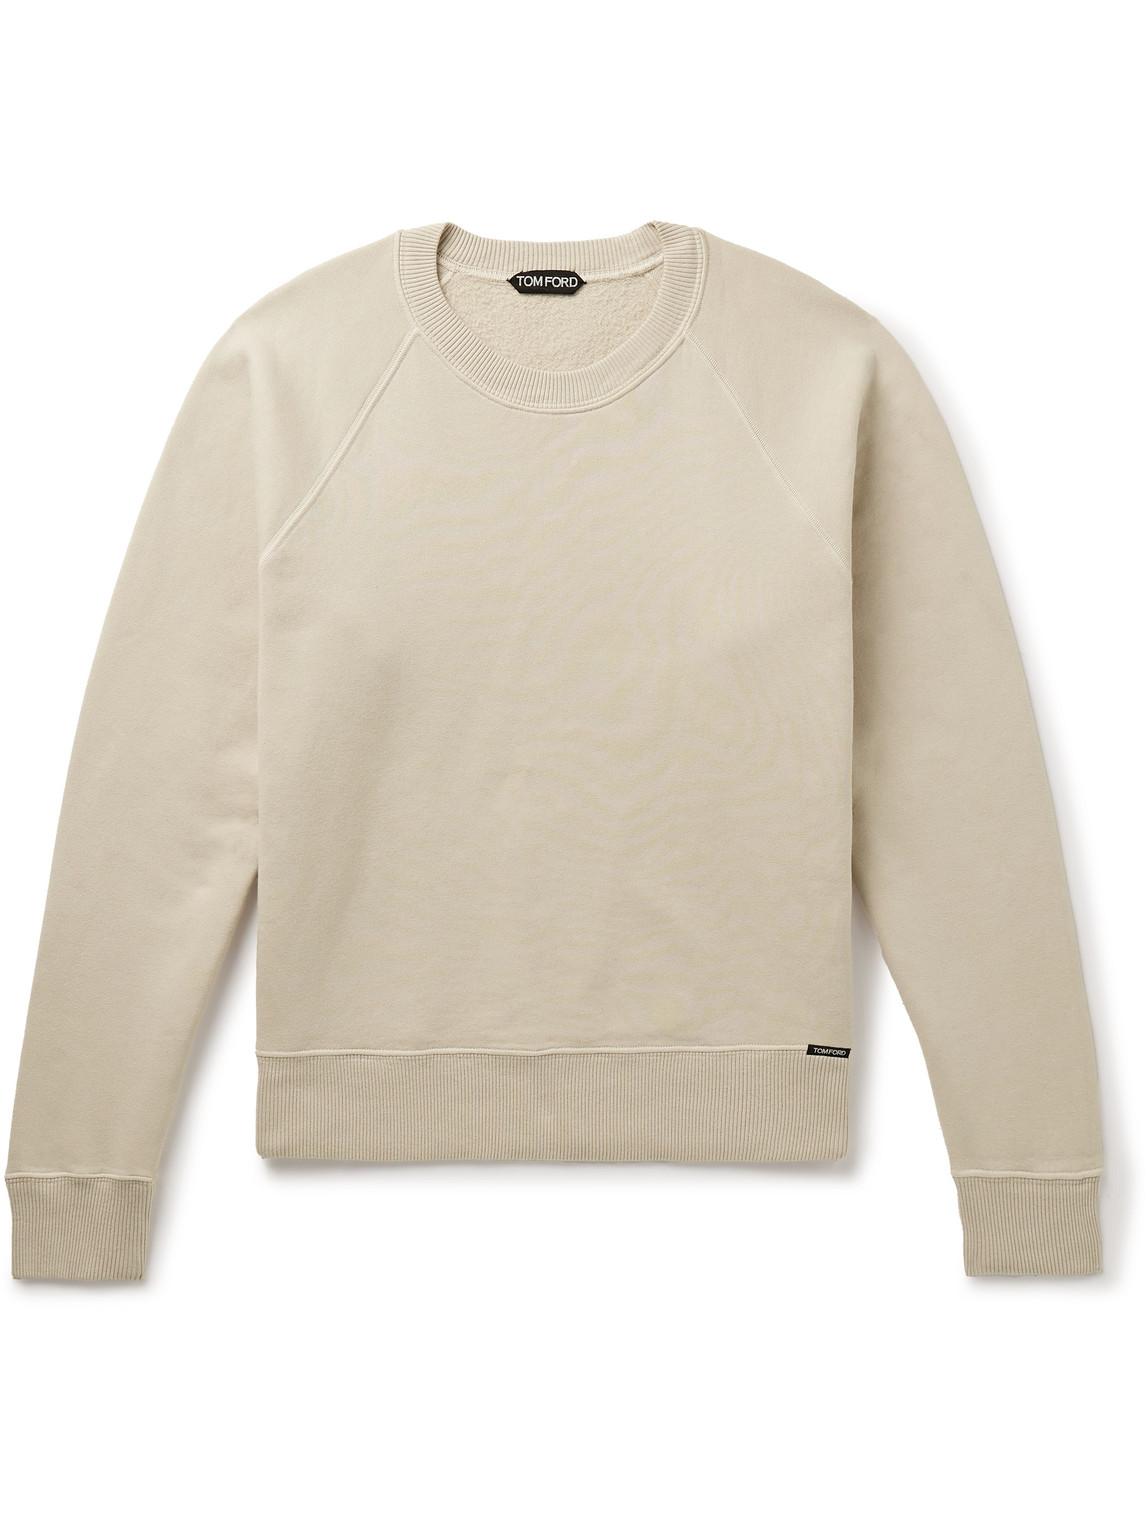 TOM FORD - Slim-Fit Garment-Dyed Cotton-Jersey Sweatshirt - Men - Neutrals - IT 60 von TOM FORD